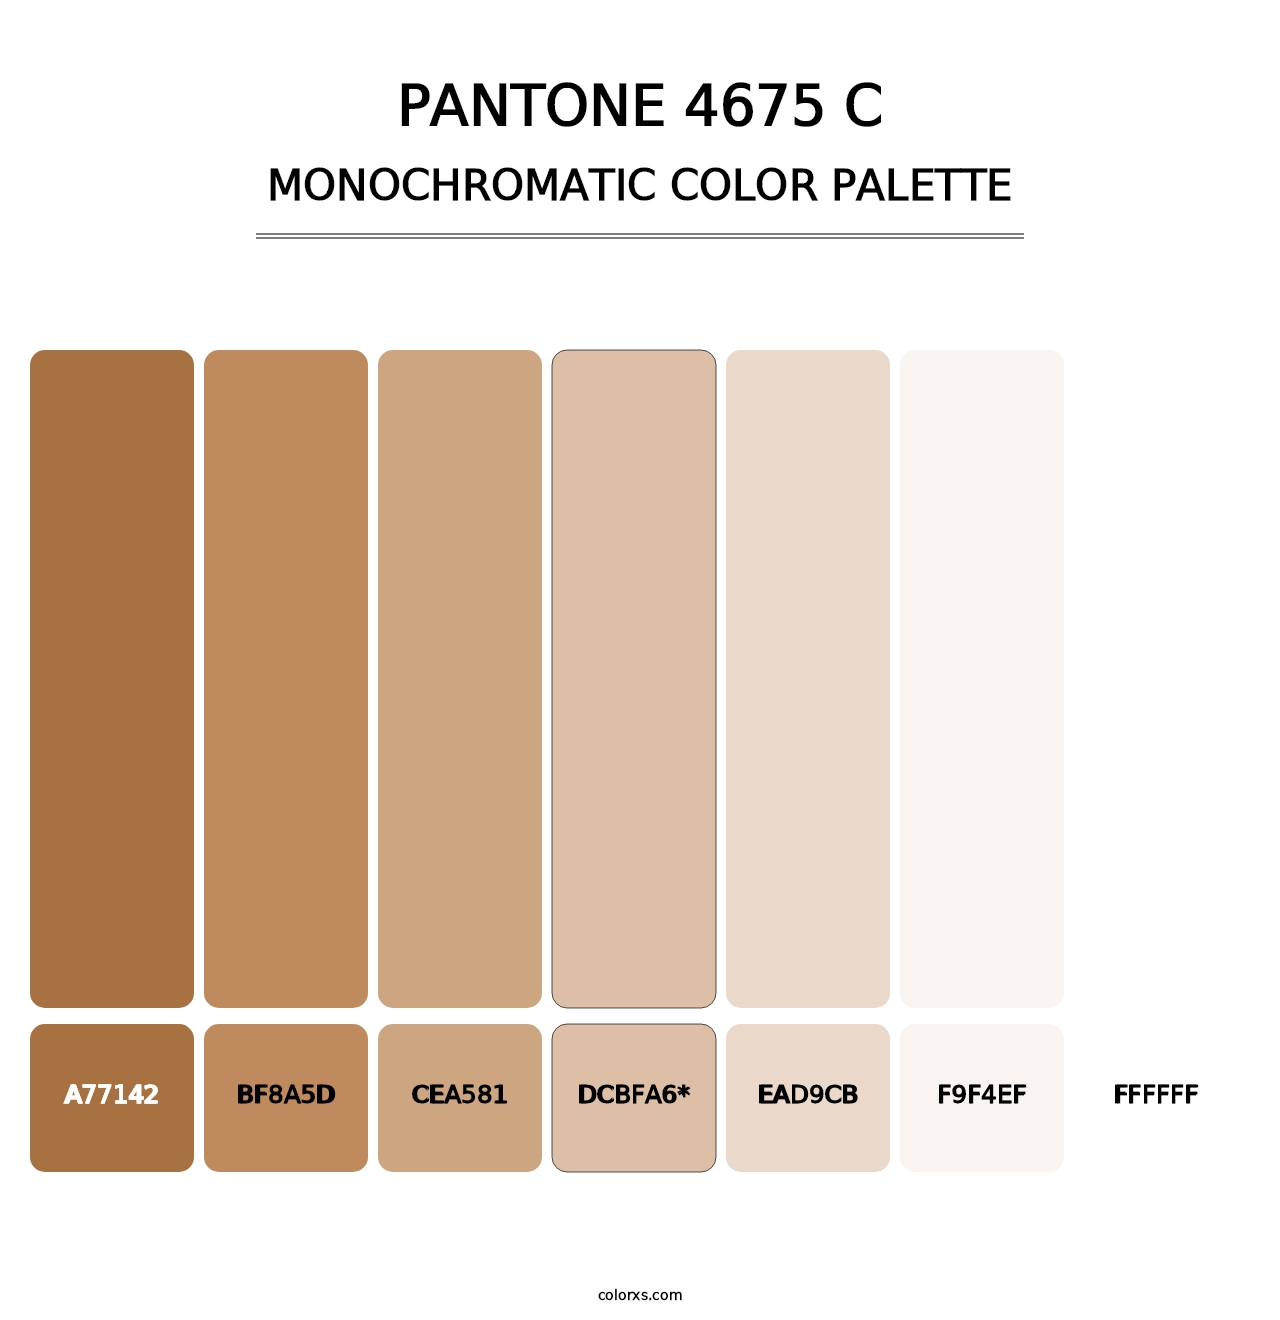 PANTONE 4675 C - Monochromatic Color Palette